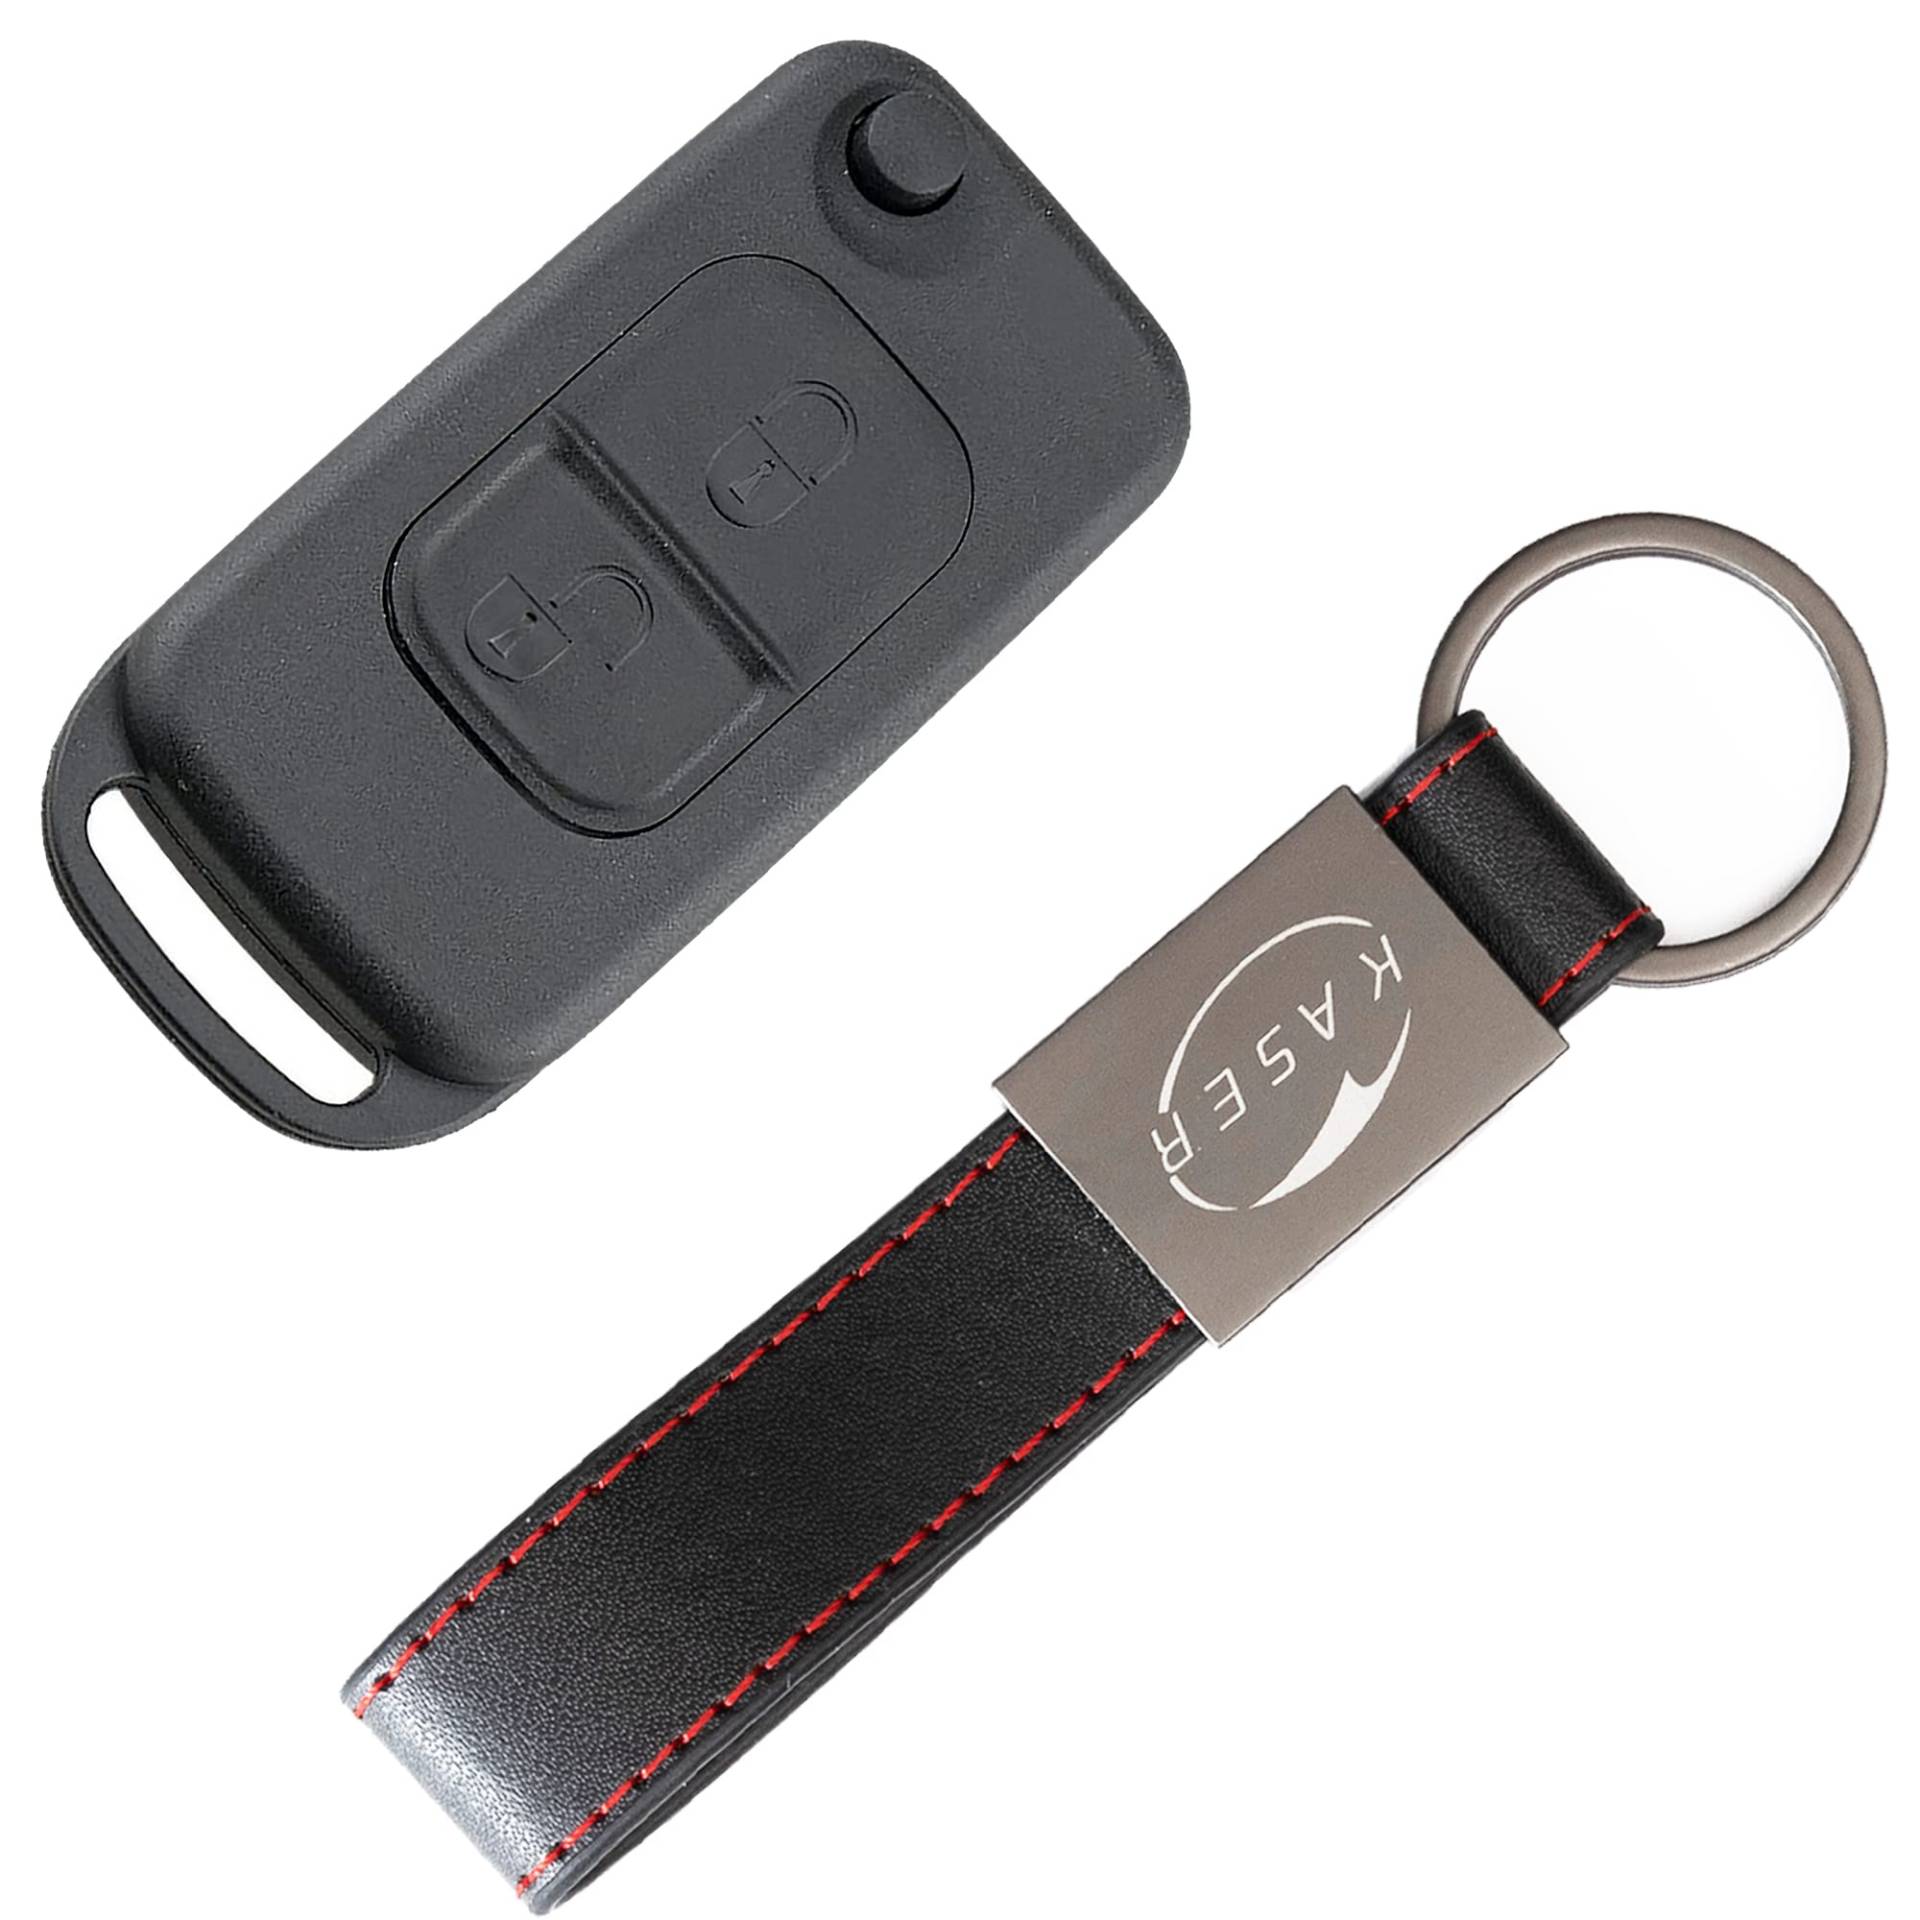 KASER Schlüssel Gehäuse Fernbedienung für Mercedes 2 Tasten Autoschlüssel Funkschlüssel Classe A C E S CL ME004 mit Leder Schlüsselanhänger von Kaser